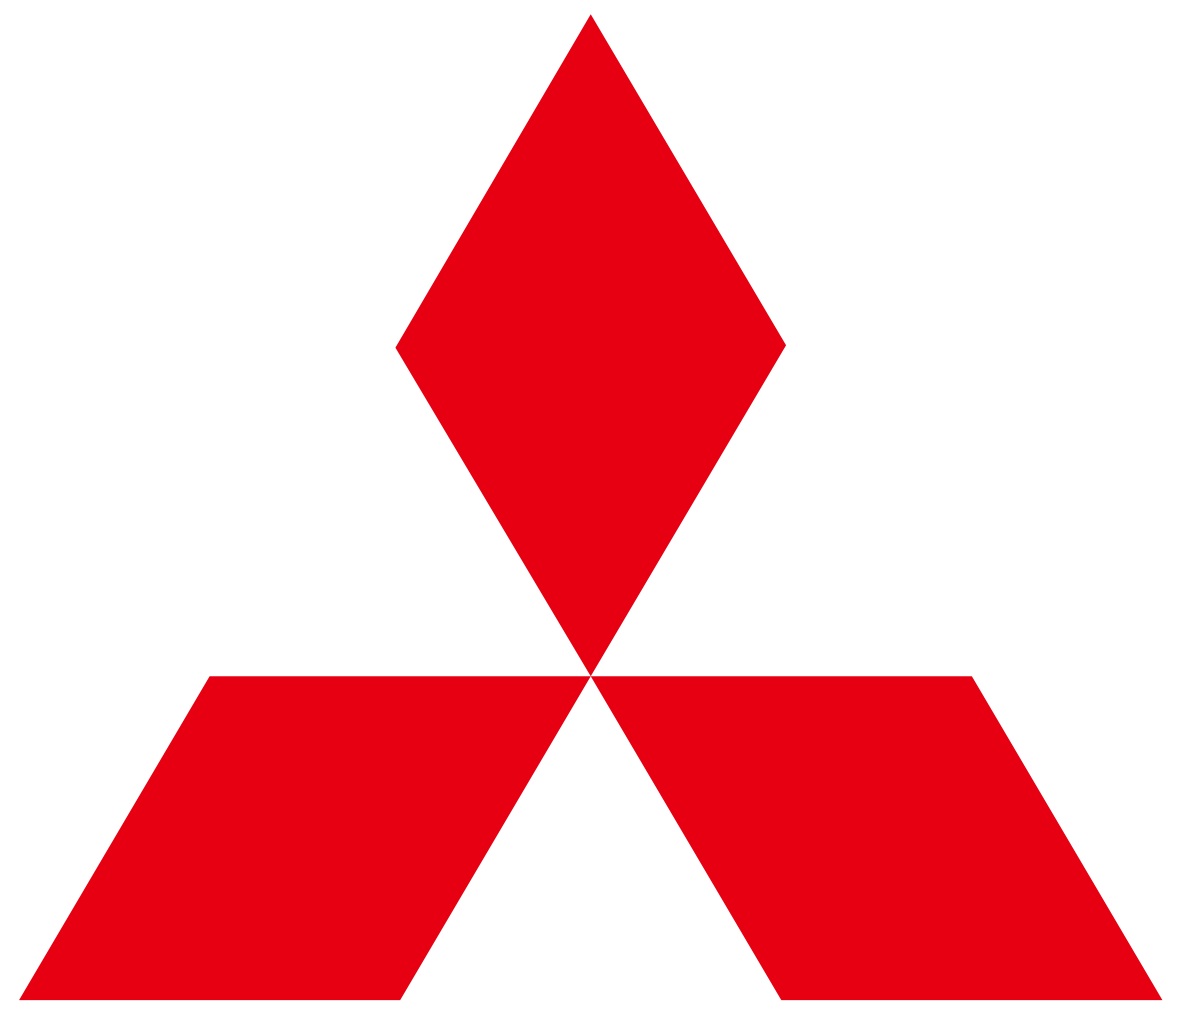 Mitsubishi_logo.svg